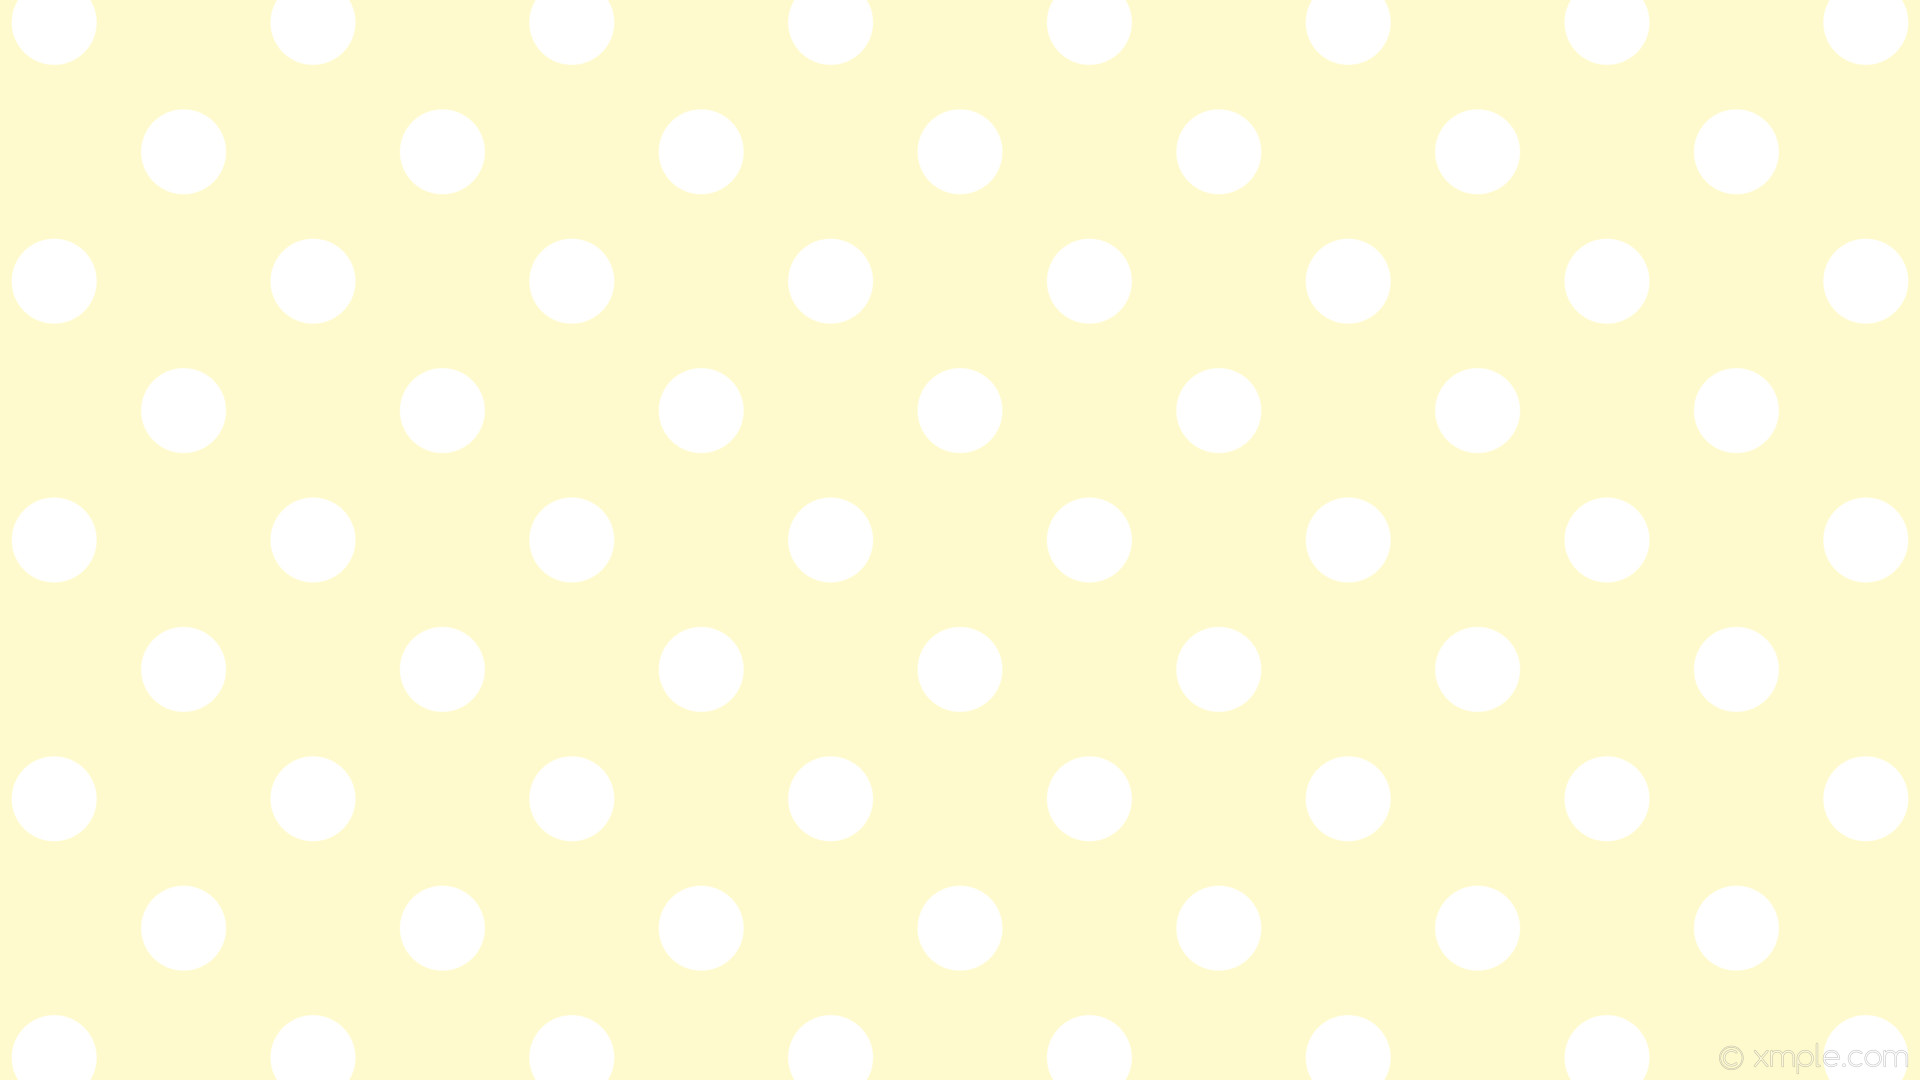 1920x1080 wallpaper white polka dots yellow spots lemon chiffon #fffacd #ffffff 45Â°  85px 183px